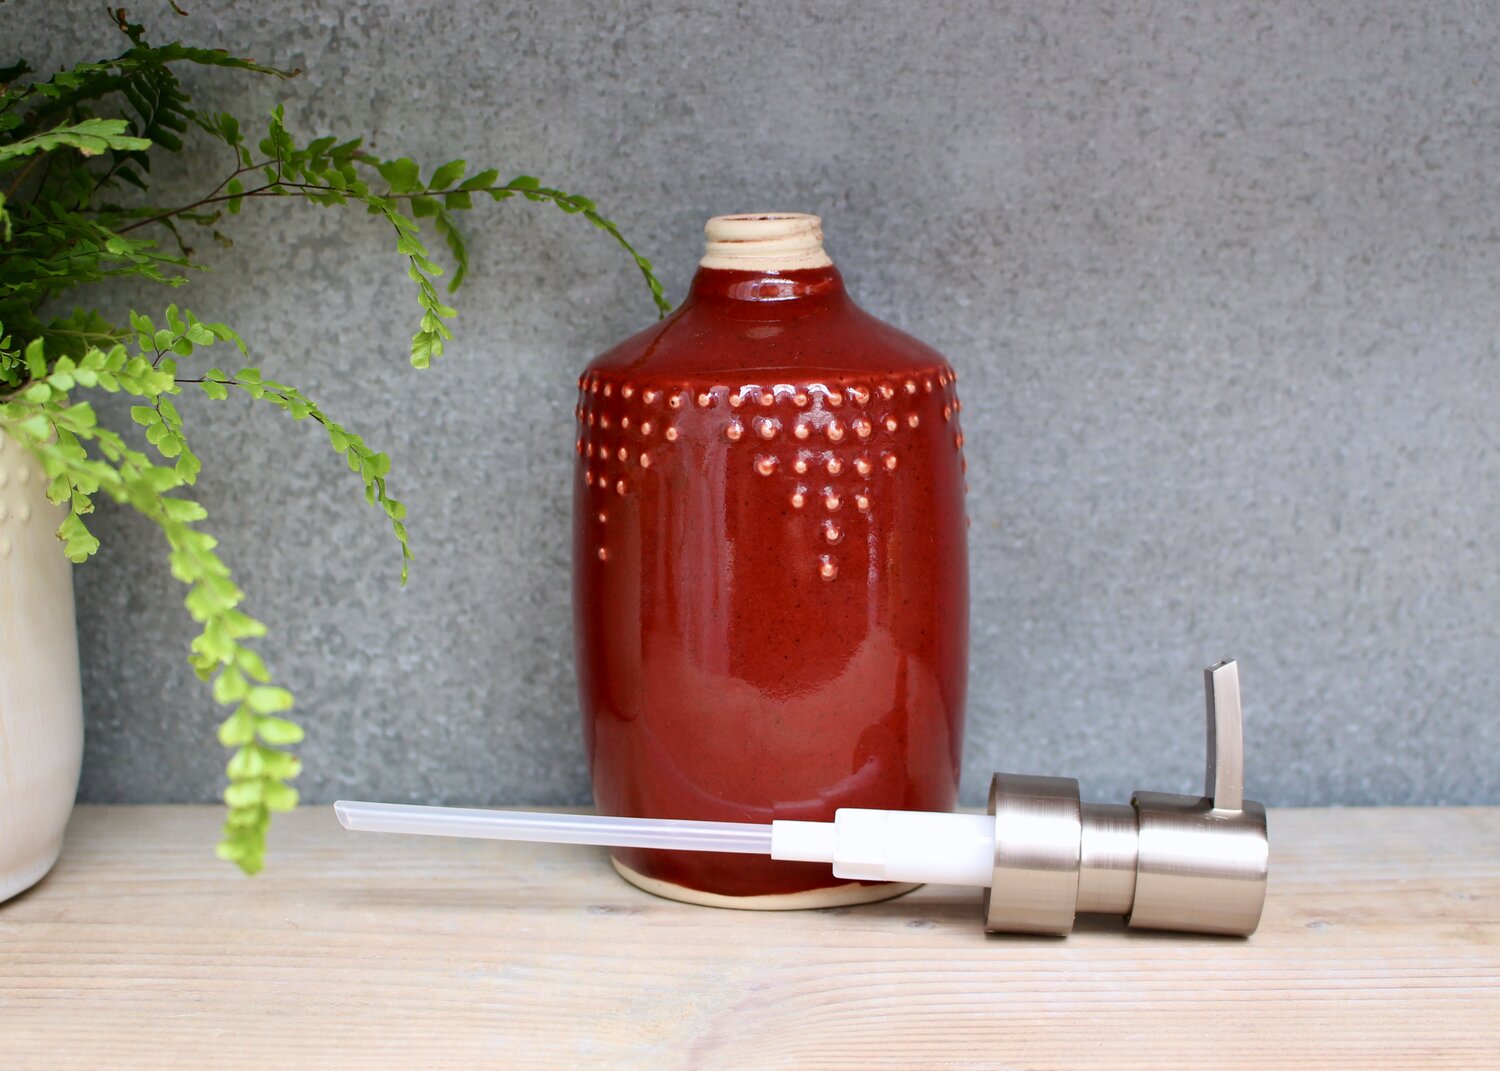 Soap or Lotion Dispenser Bottle in Aqua Mist - Kitchen Set — Back Bay  Pottery